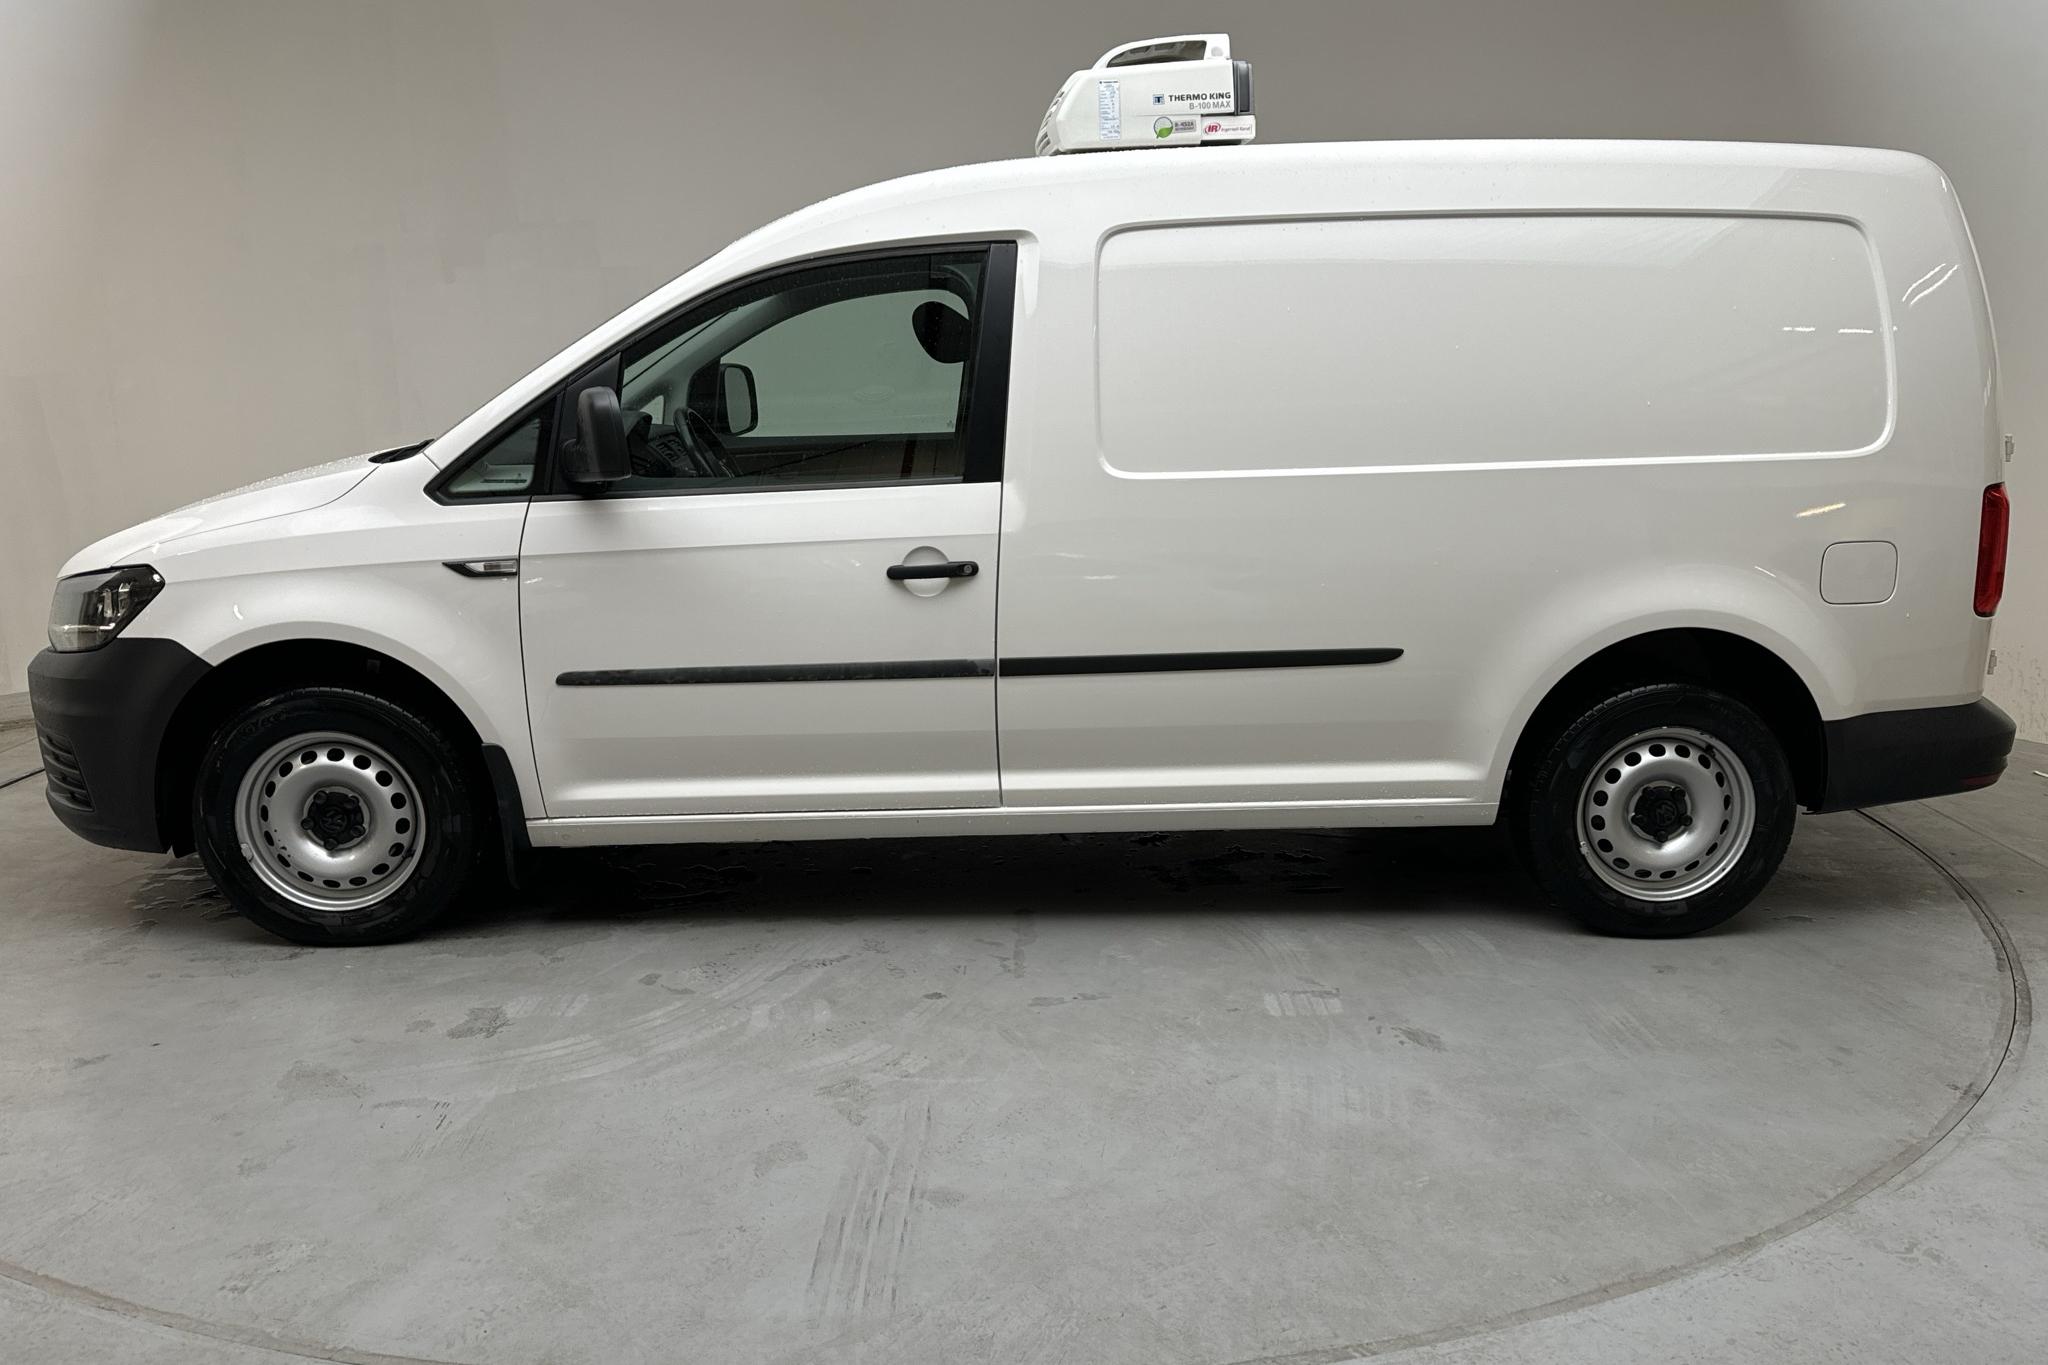 VW Caddy 1.4 TGI Maxi Skåp (110hk) - 89 310 km - Automatic - white - 2019